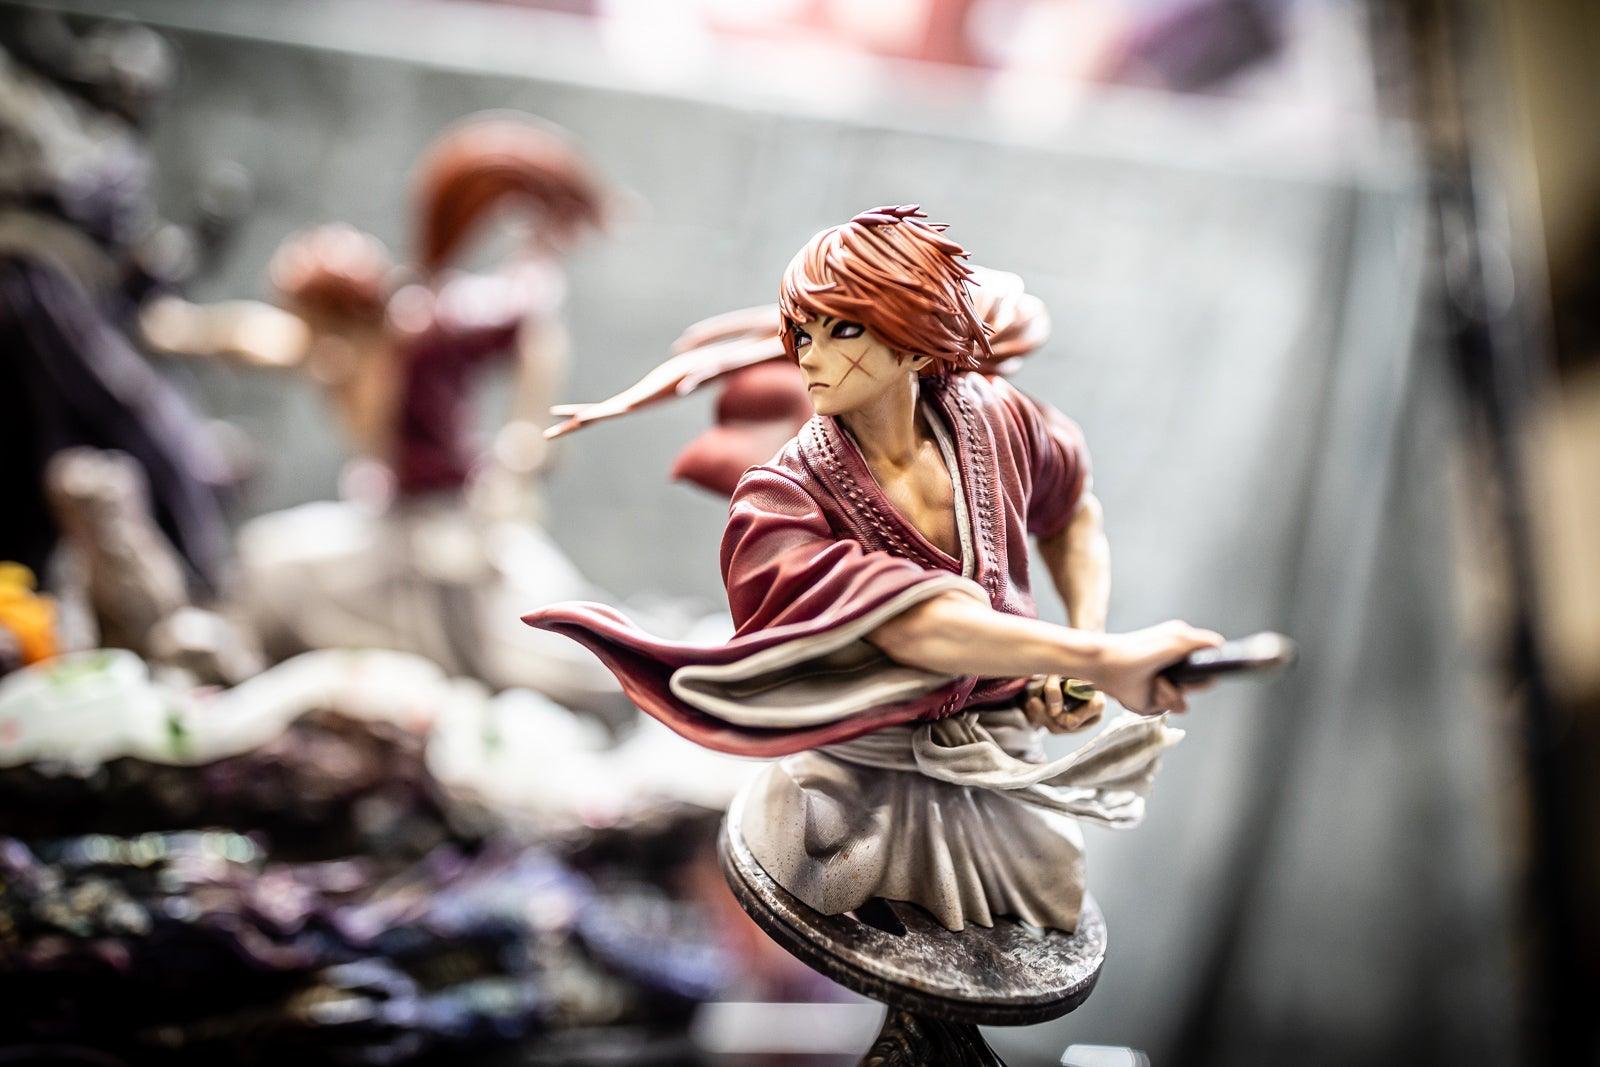 Rurouni Kenshin Statue- Flexible Plan for Twelve Months Resin Figures Figurama Collectors 